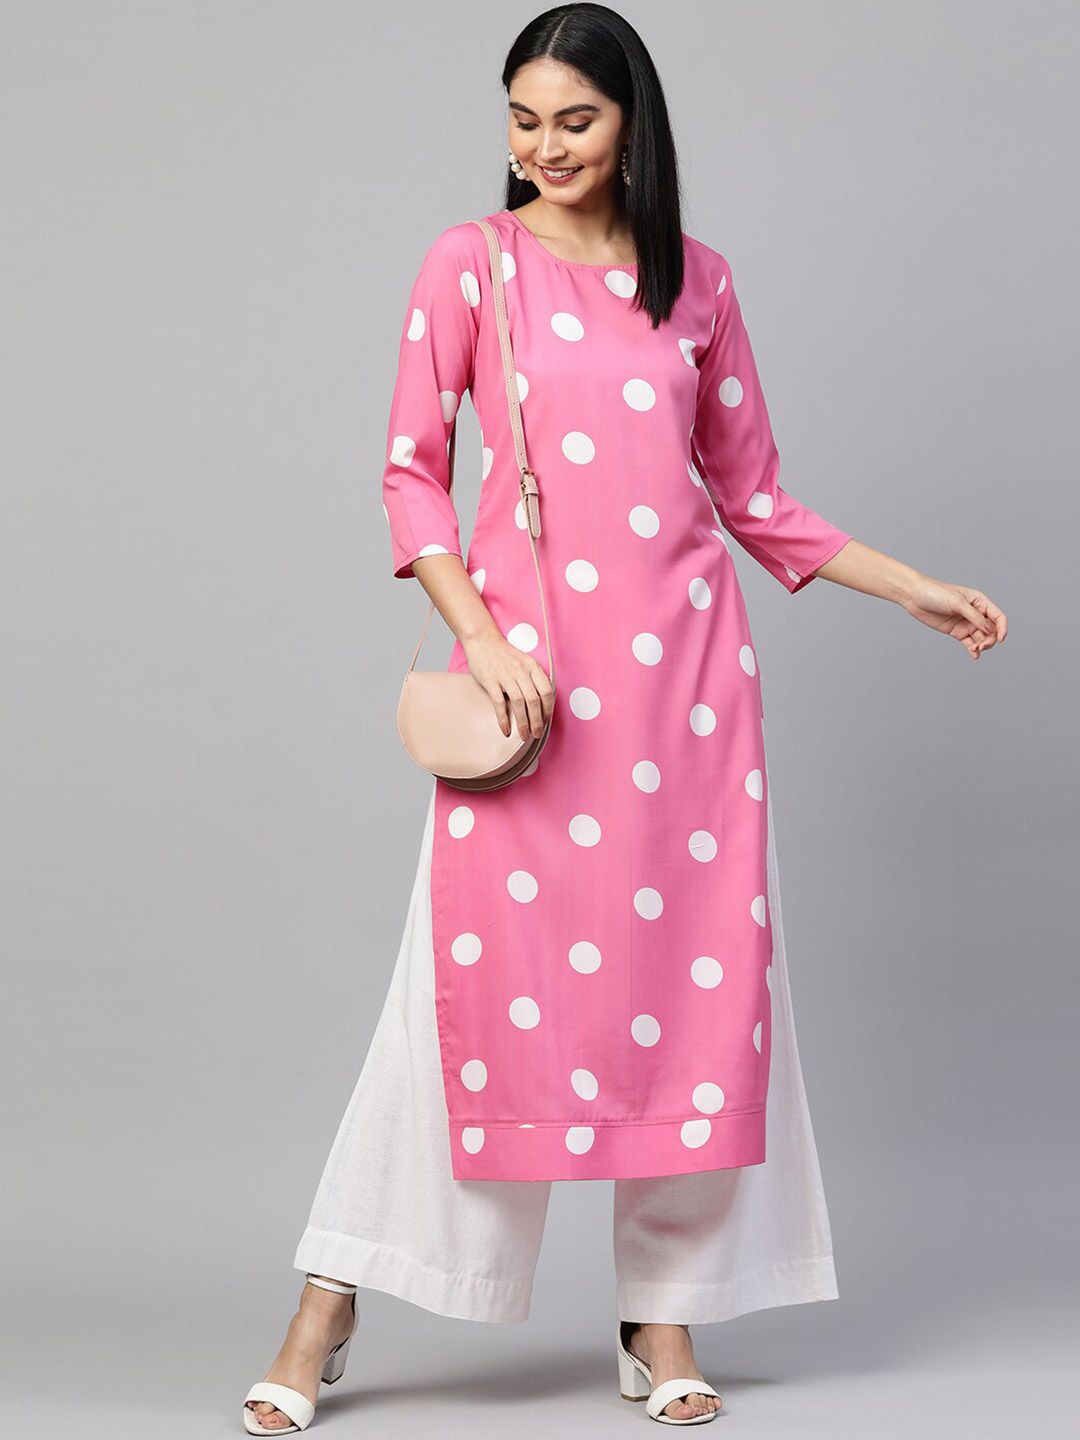 KALINI Pink & White Printed Kurti Price in India